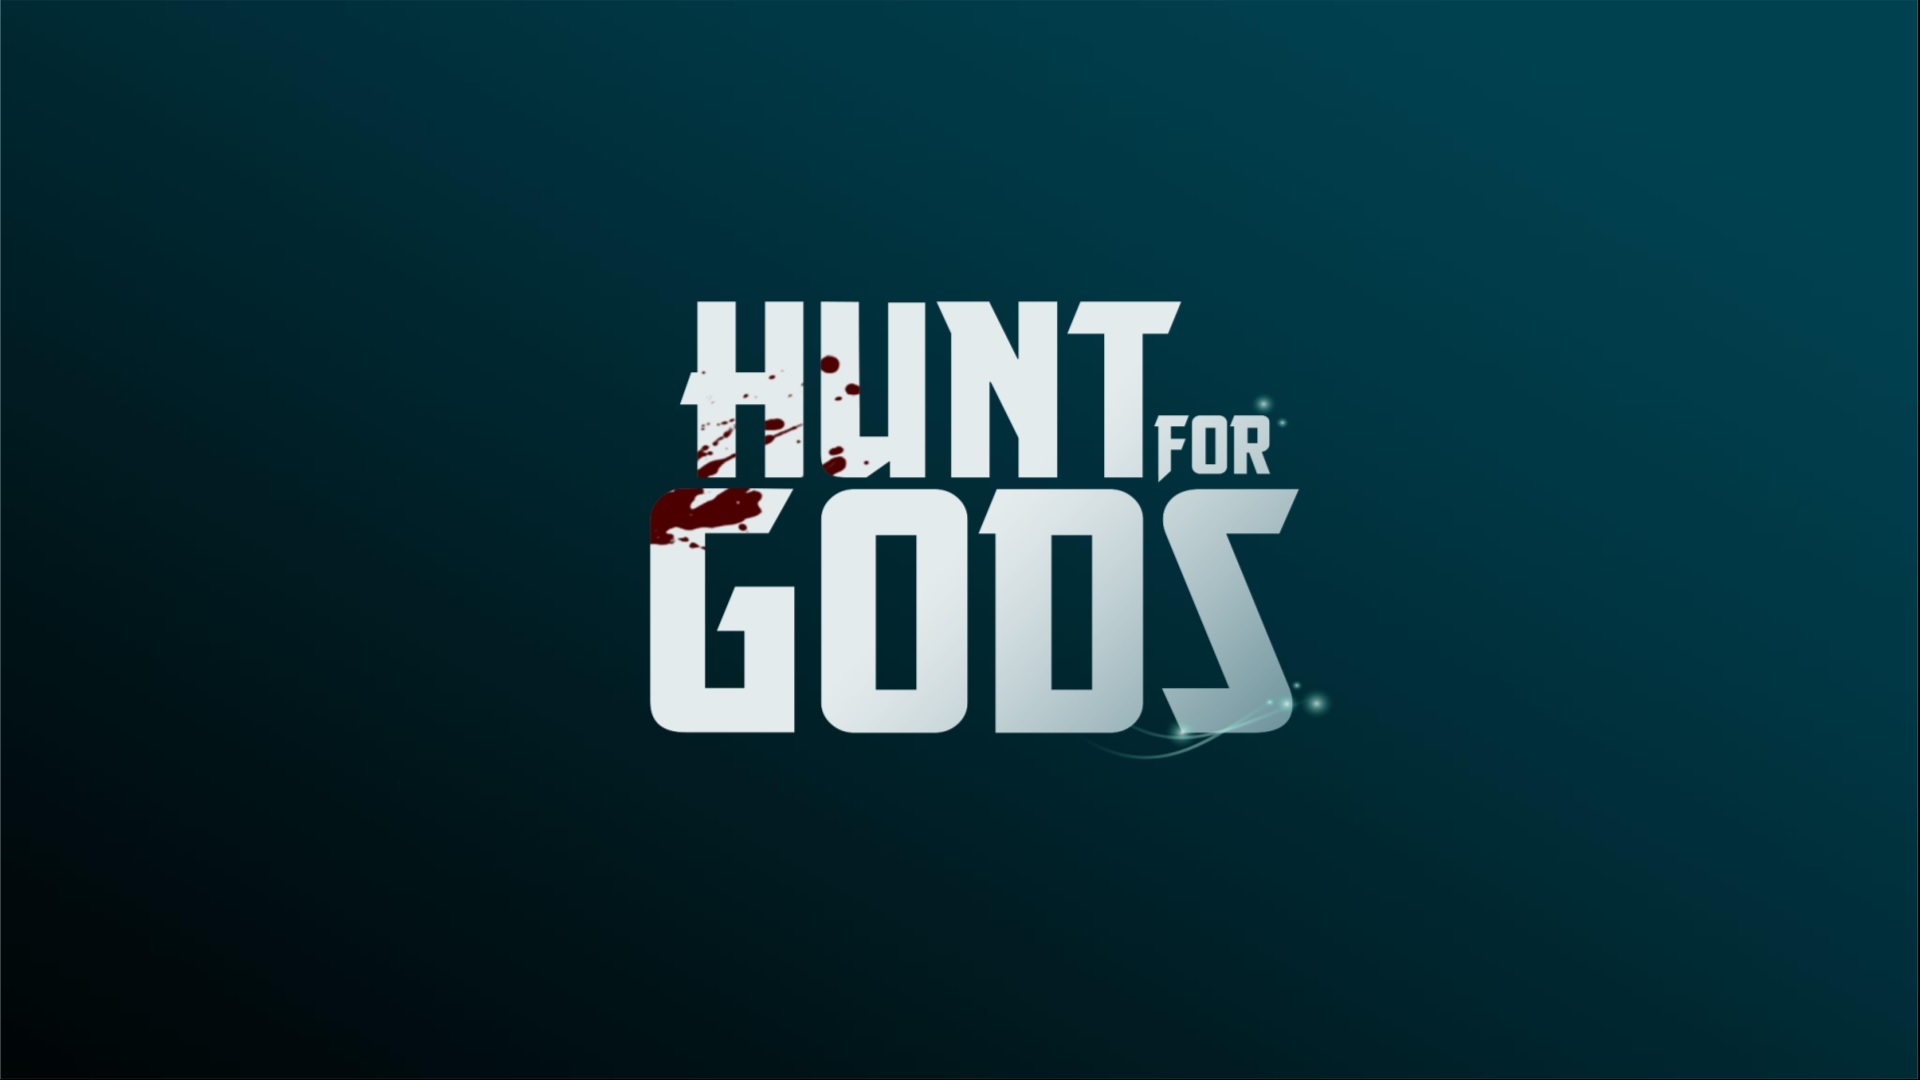 God hunt. Hunt for Gods. Hunt for you компания. Hunt for you.